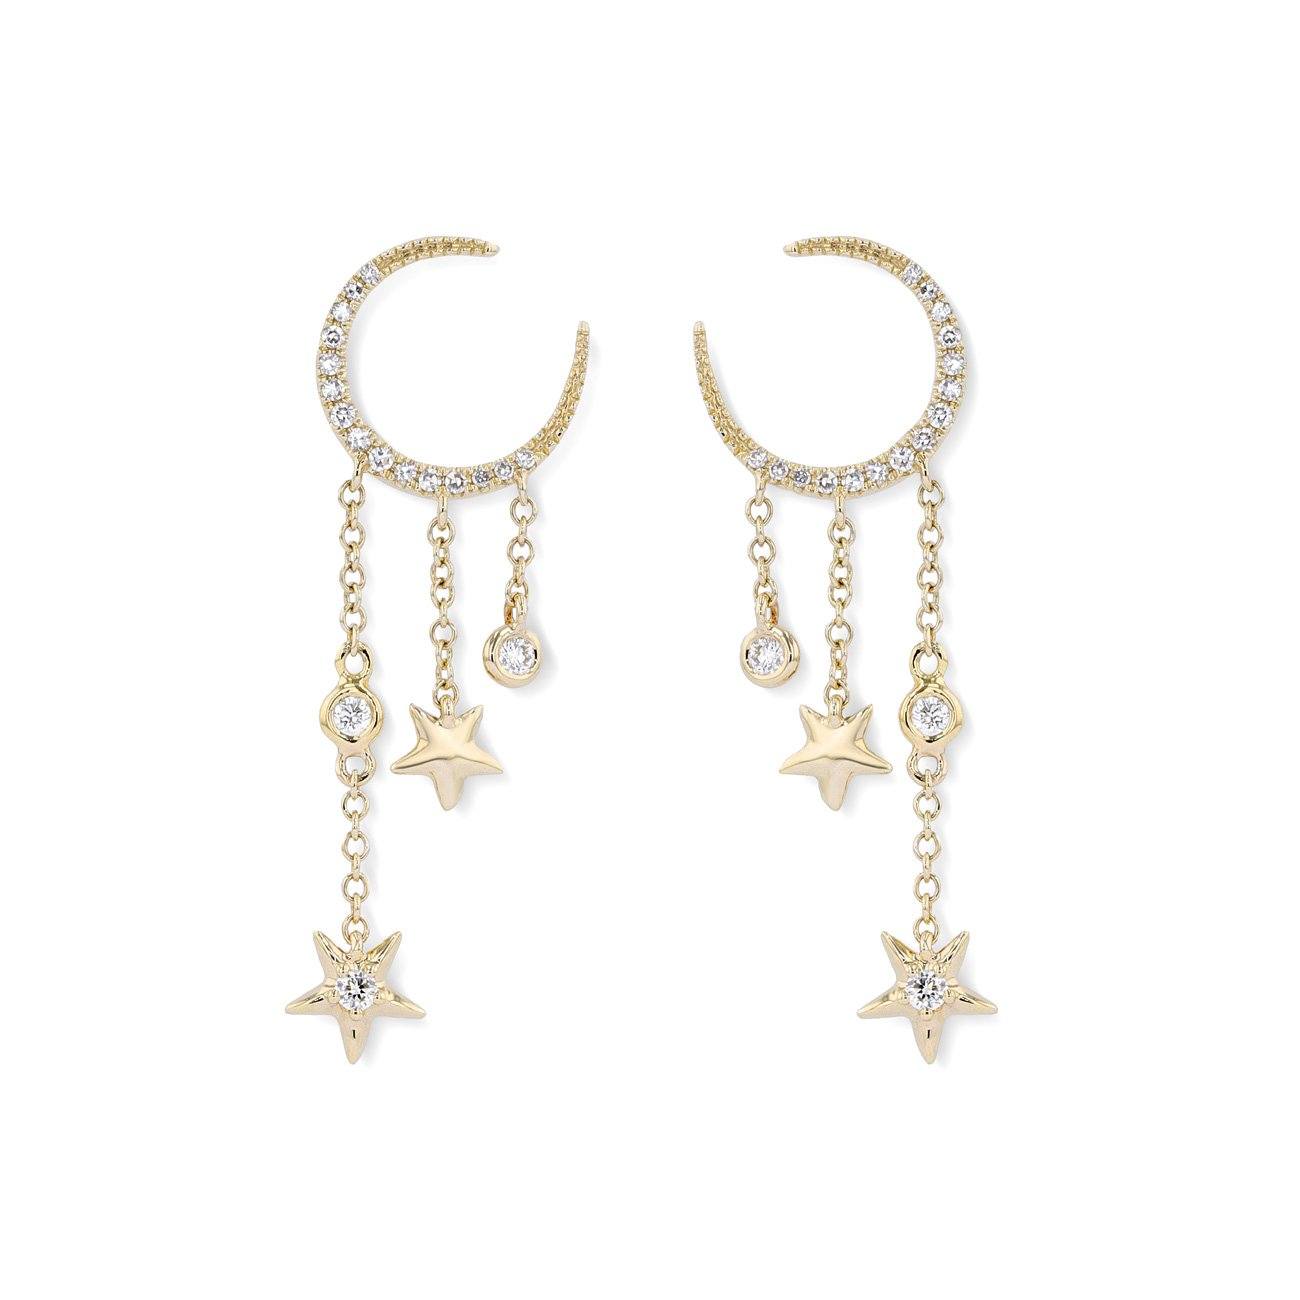 Moonstar Diamond Earrings 2.0 Fine Jewelry Earrings Princess Bride Diamonds 